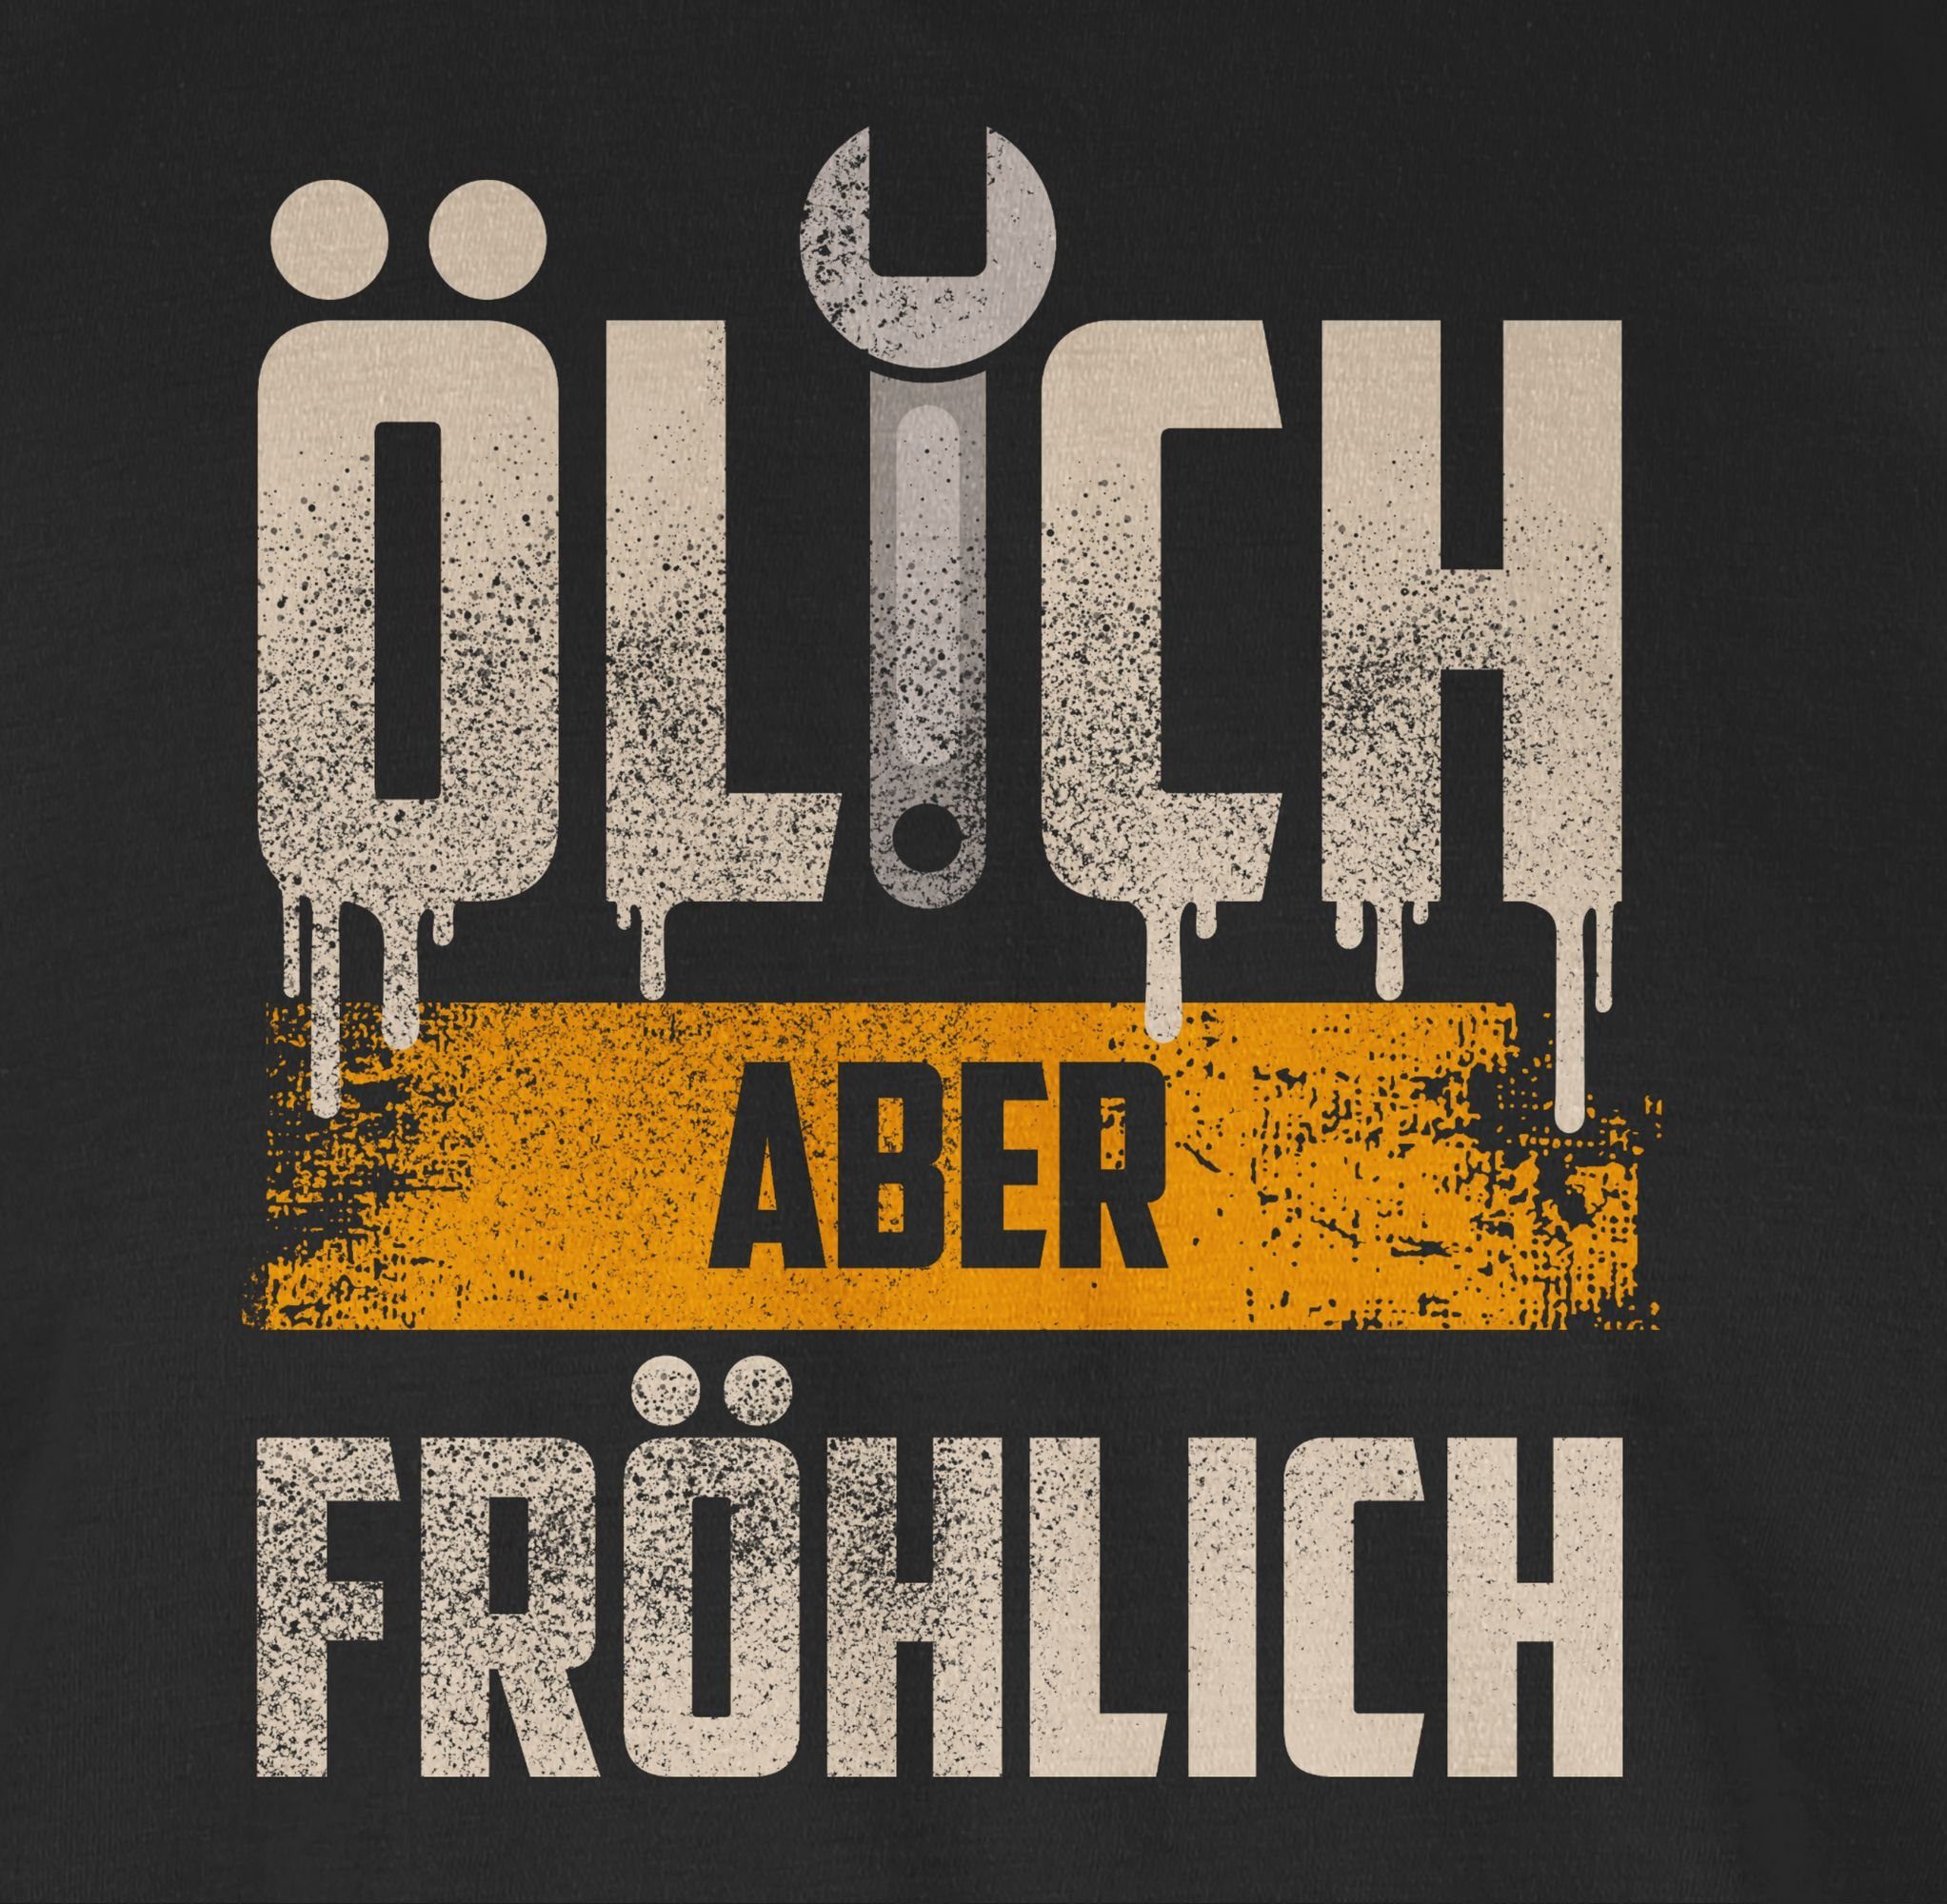 Ölich T-Shirt 01 fröhlich Schwarz Shirtracer aber Geschenke Handwerker